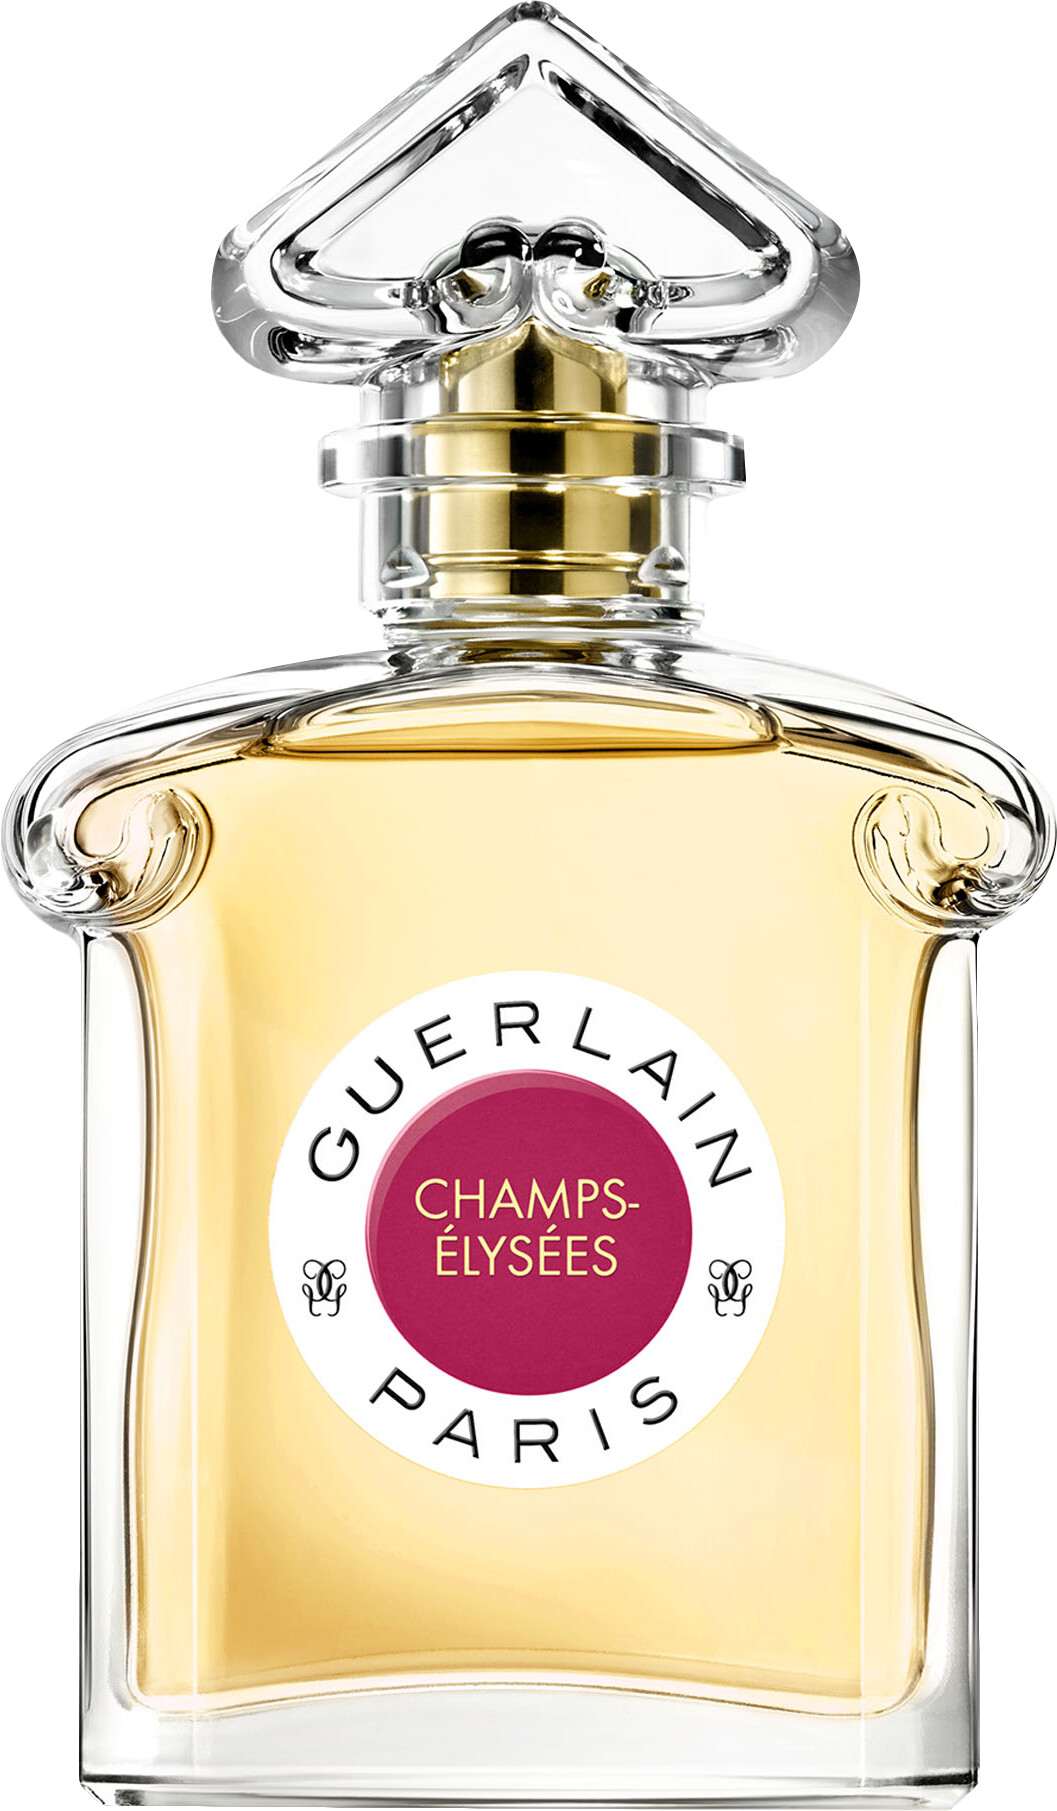 GUERLAIN Champs-Elysees Eau de Parfum Spray 75ml